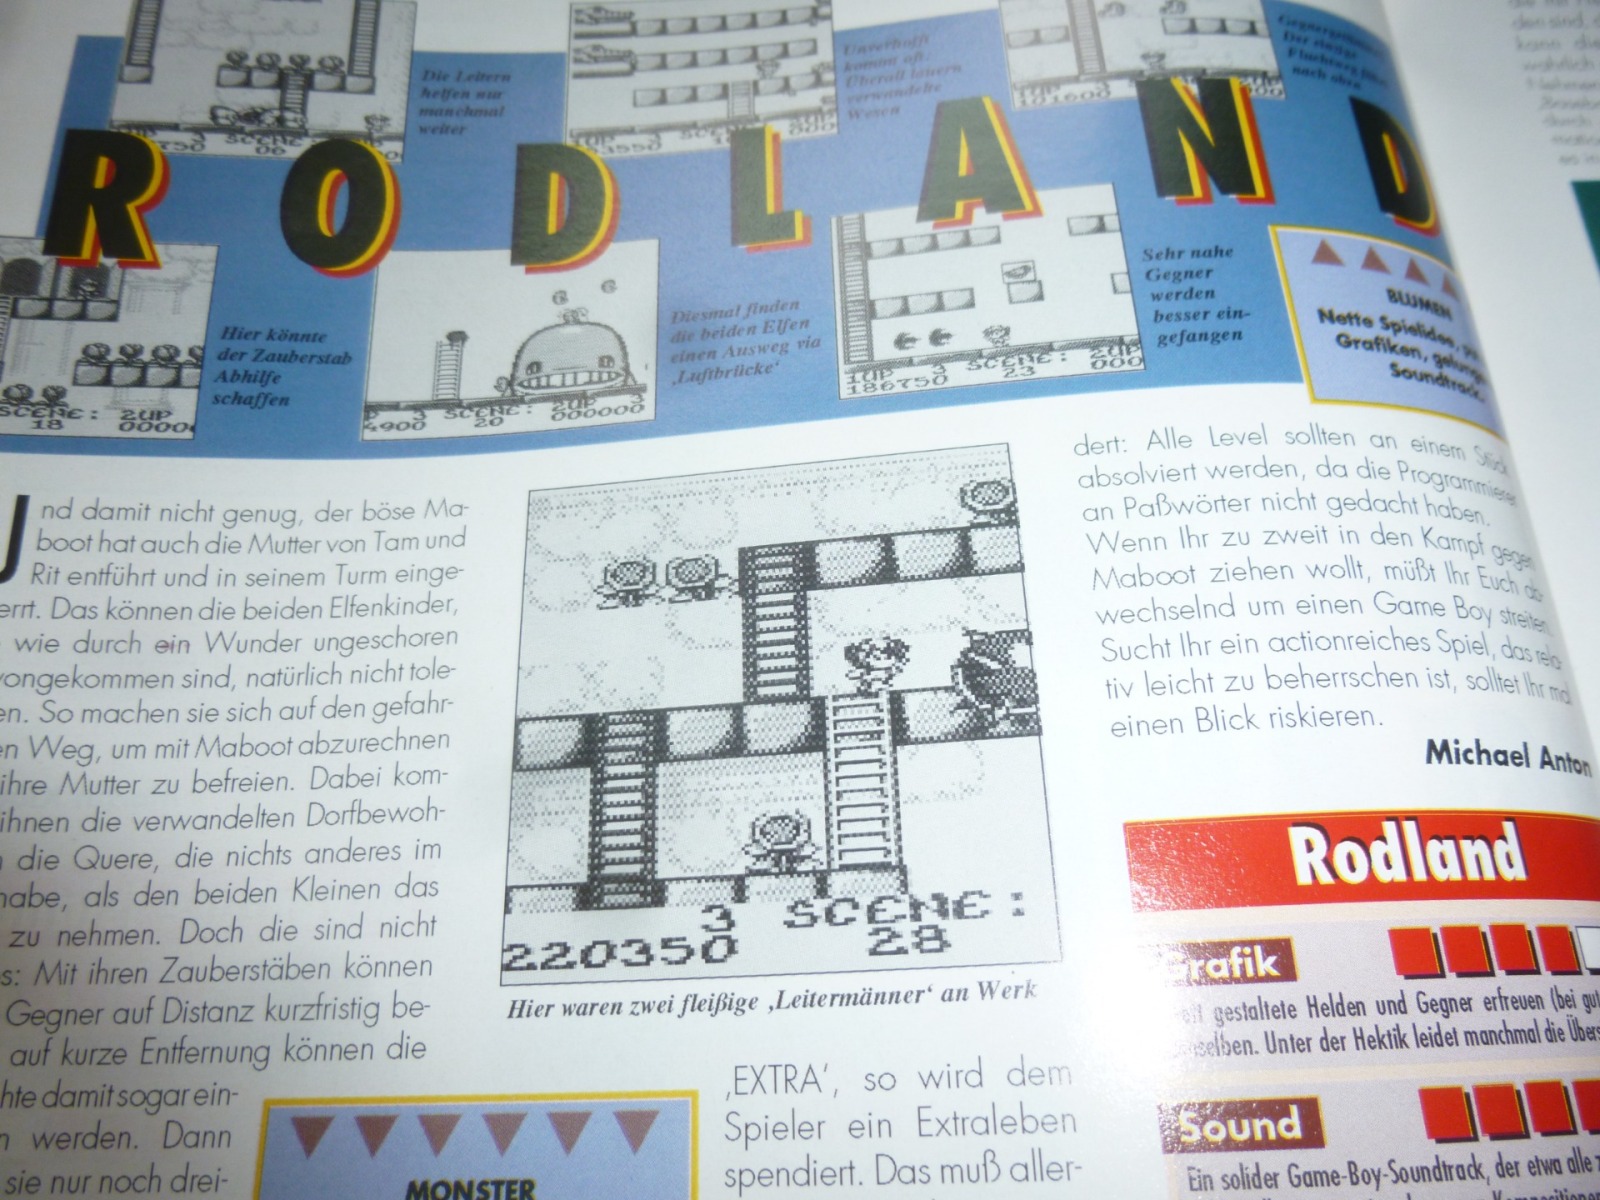 TOTAL Das unabhängige Magazin - 100 Nintendo - Ausgabe 7/93 1993 18